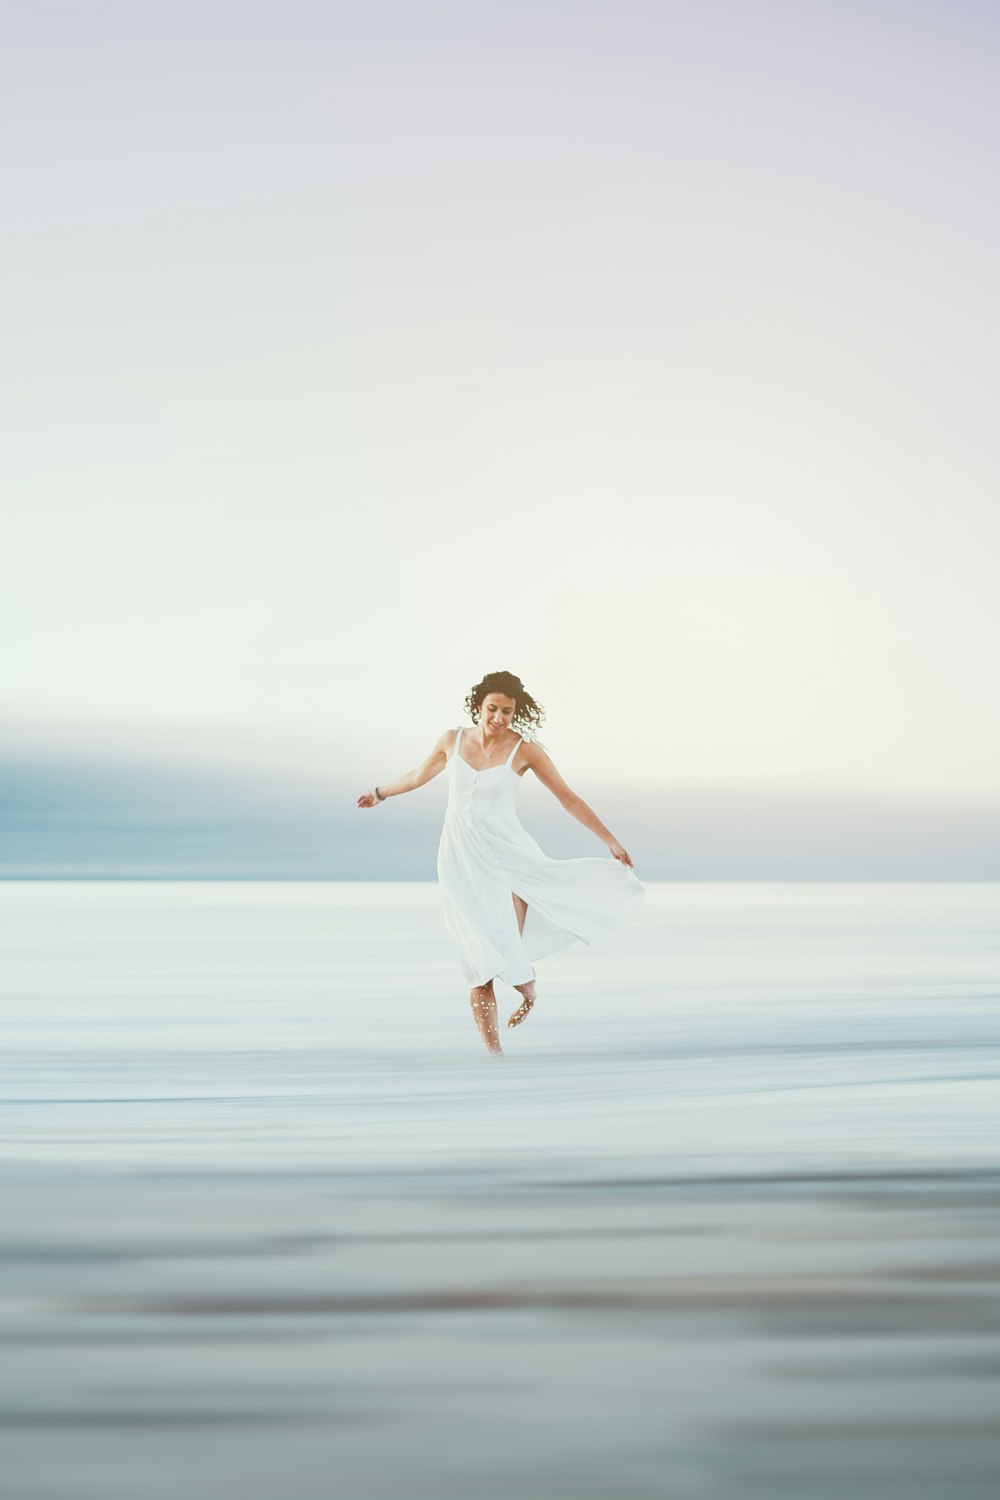 uma mulher em um vestido branco pulando no ar